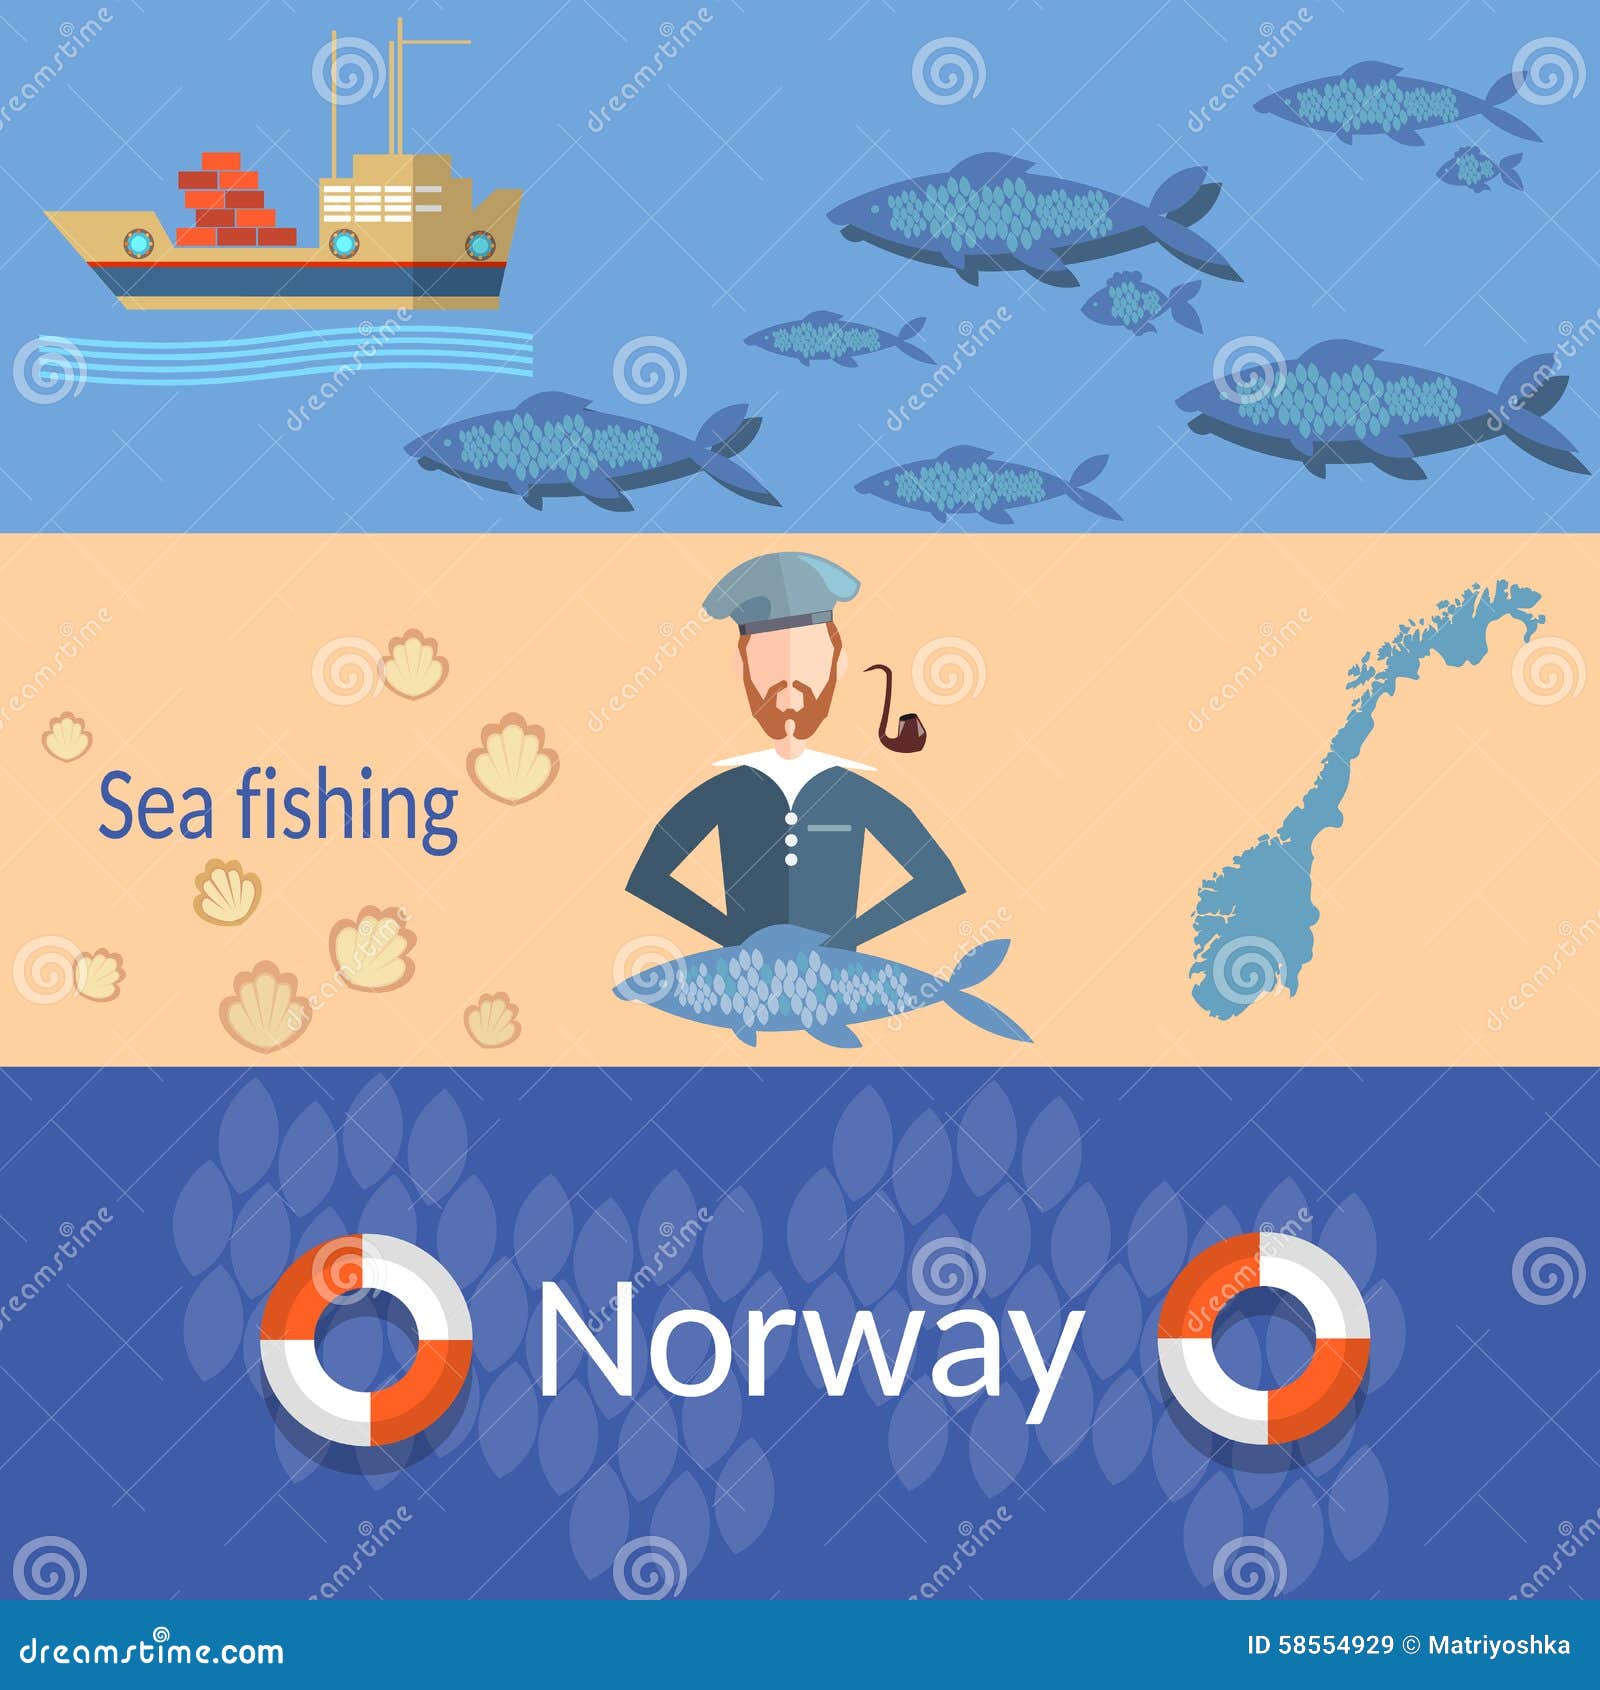 travel norway: sailors, ships, ocean, sea, fish, banners